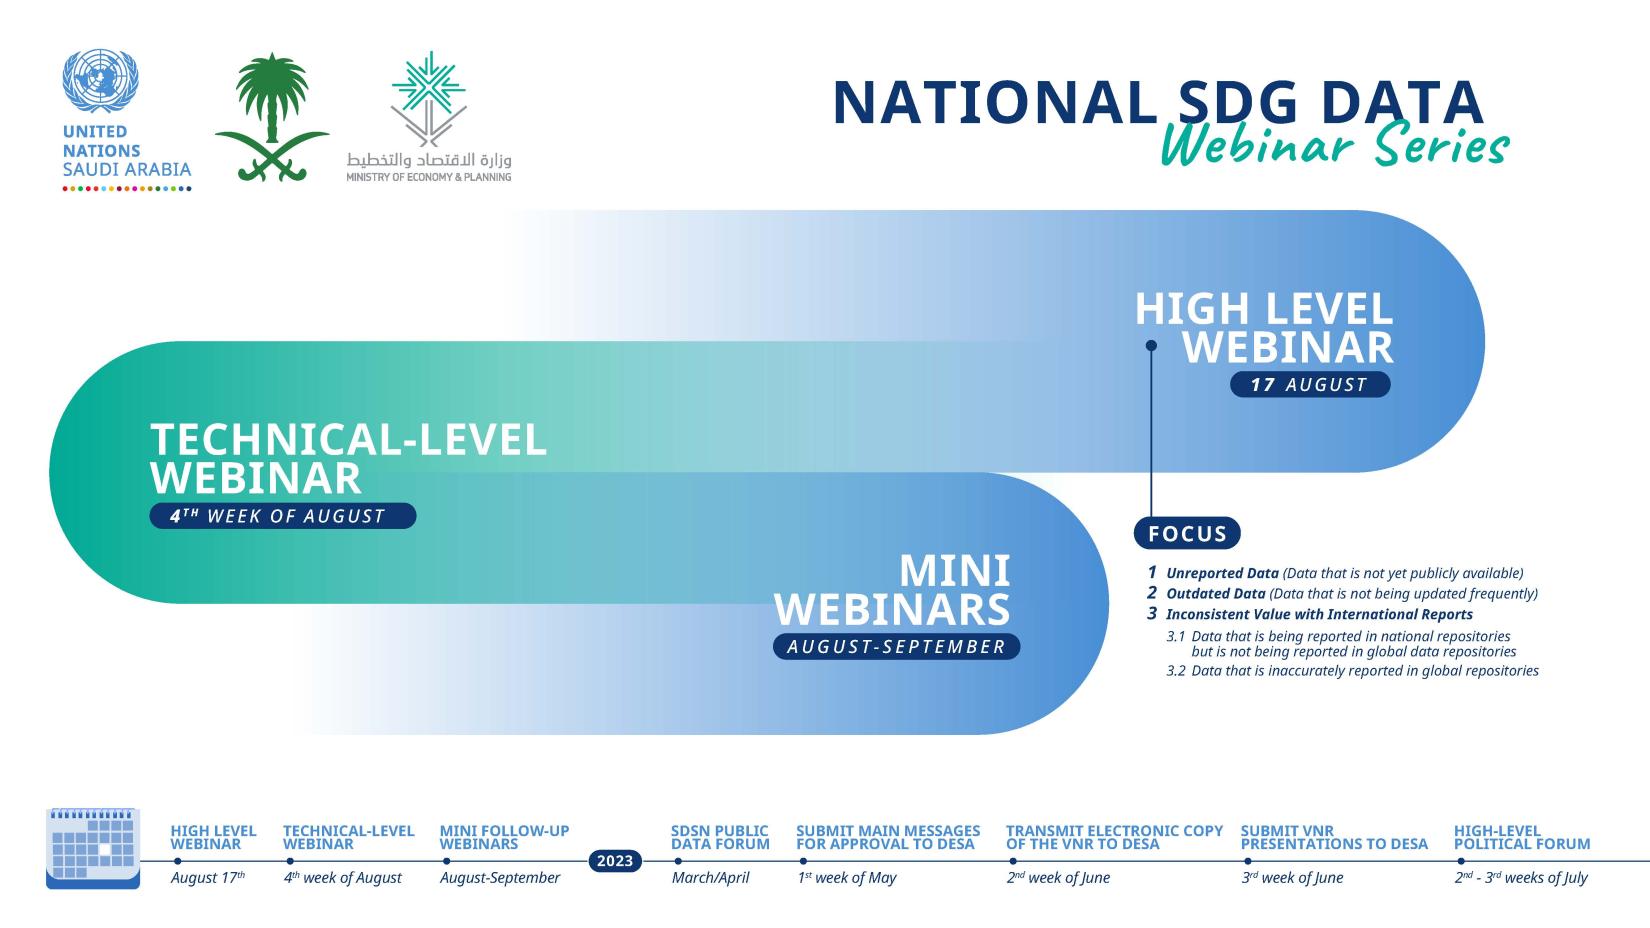 National SDG Data Webinar Series timeline infographic